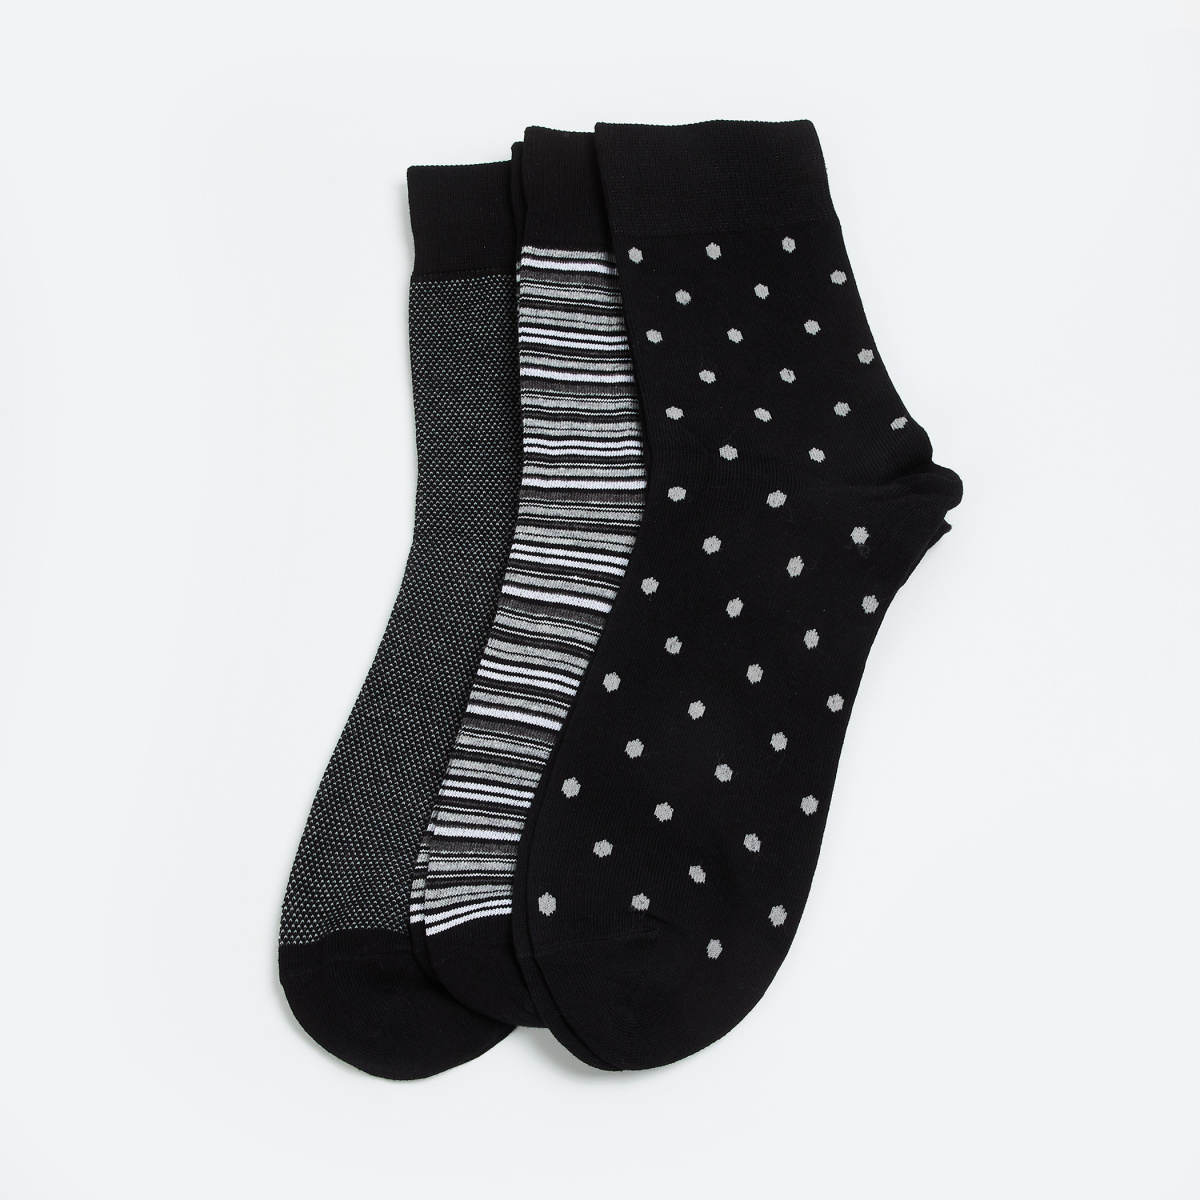 CODE Men Woven Design Socks - Pack of 3